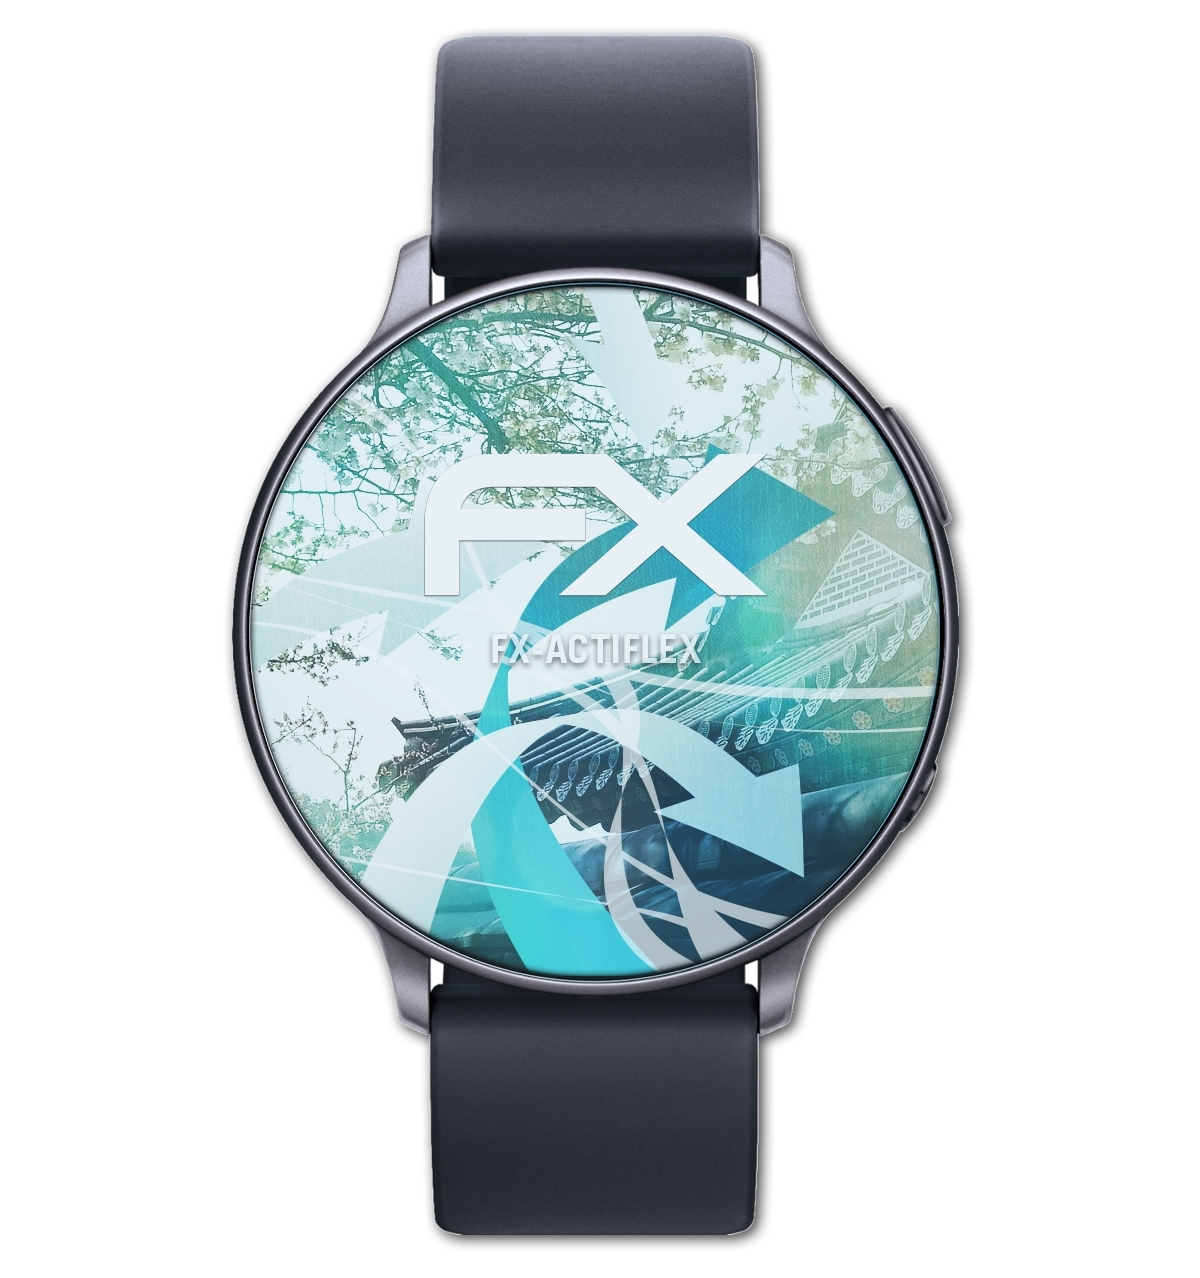 Display Displayschutz(für Smartwatch (36mm)) FX-ActiFleX ATFOLIX 3x